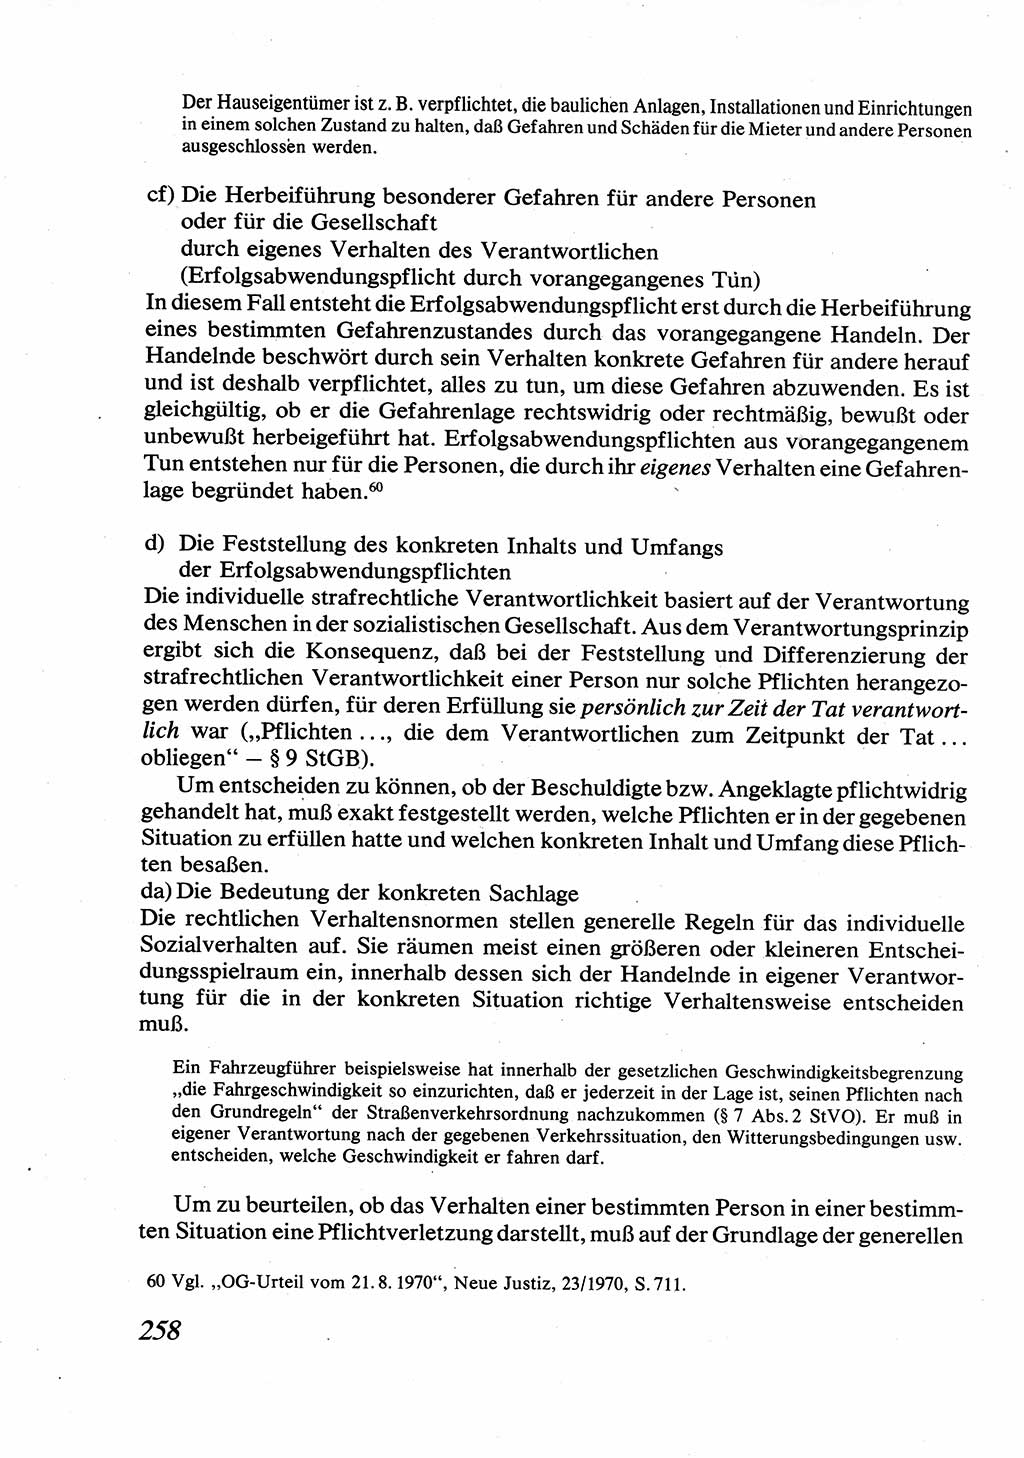 Strafrecht [Deutsche Demokratische Republik (DDR)], Allgemeiner Teil, Lehrbuch 1976, Seite 258 (Strafr. DDR AT Lb. 1976, S. 258)